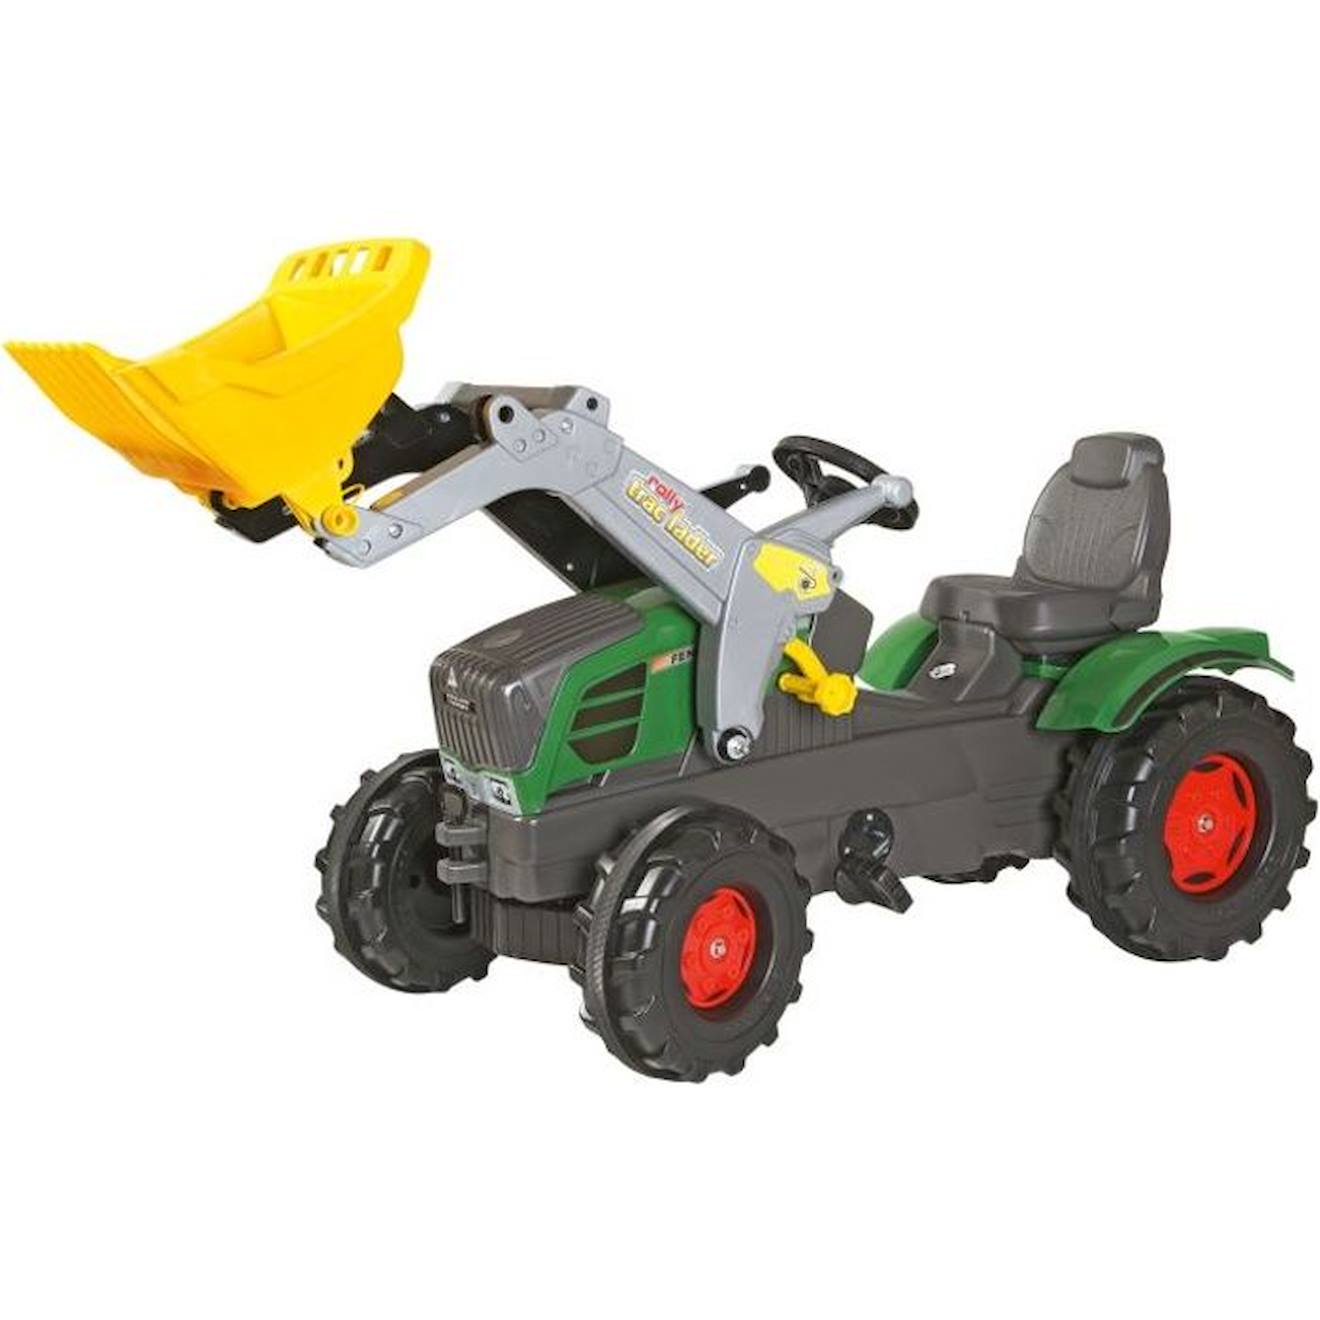 Tracteur À Pédales Fendt Vario 211 Avec Chargeur Rolly Farmtrac Pour Enfant De 3 Ans Et Plus - Jaune